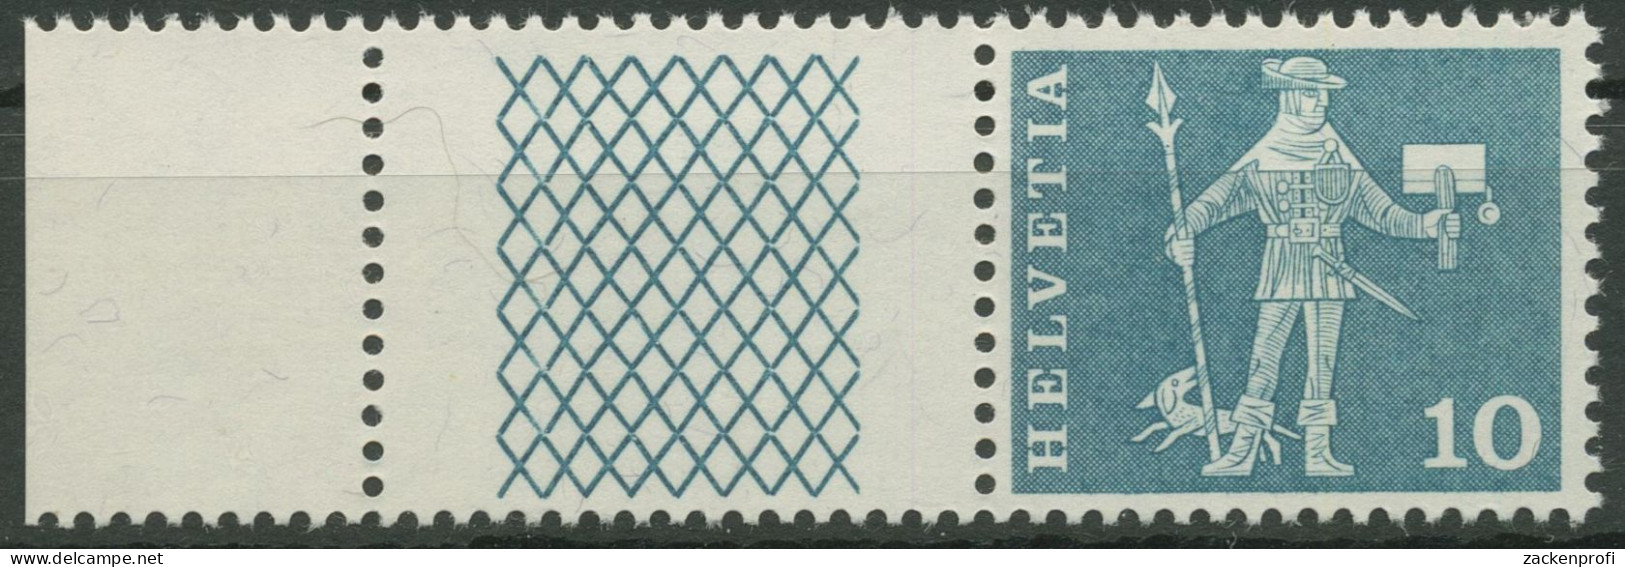 Schweiz 1960 Postmotive Postbote 697 W 26 Postfrisch - Neufs